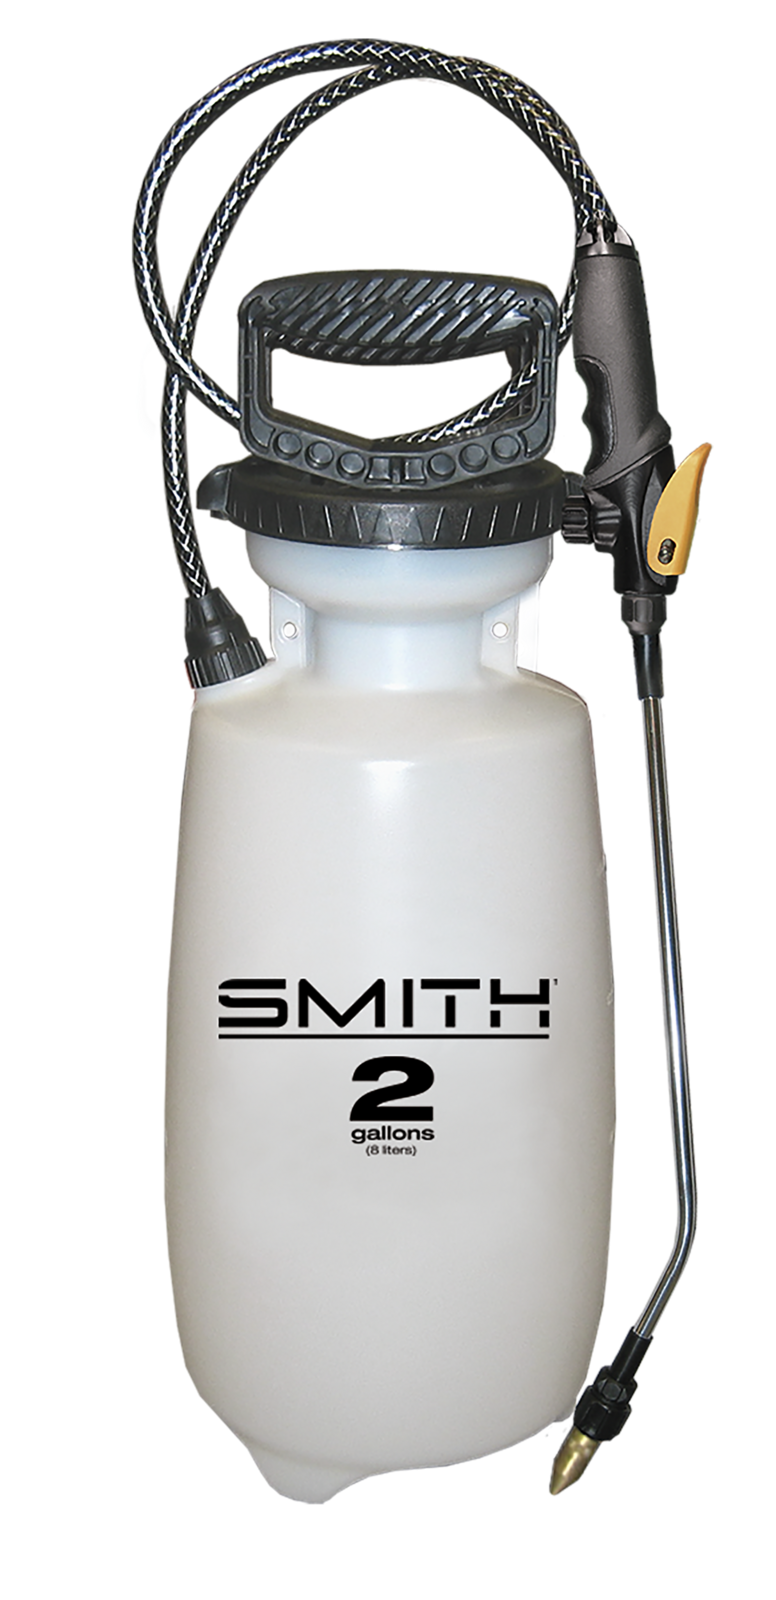 Smith™ Premium 2 Gal Multi-Purpose, Contractor Sprayer, Model 190364